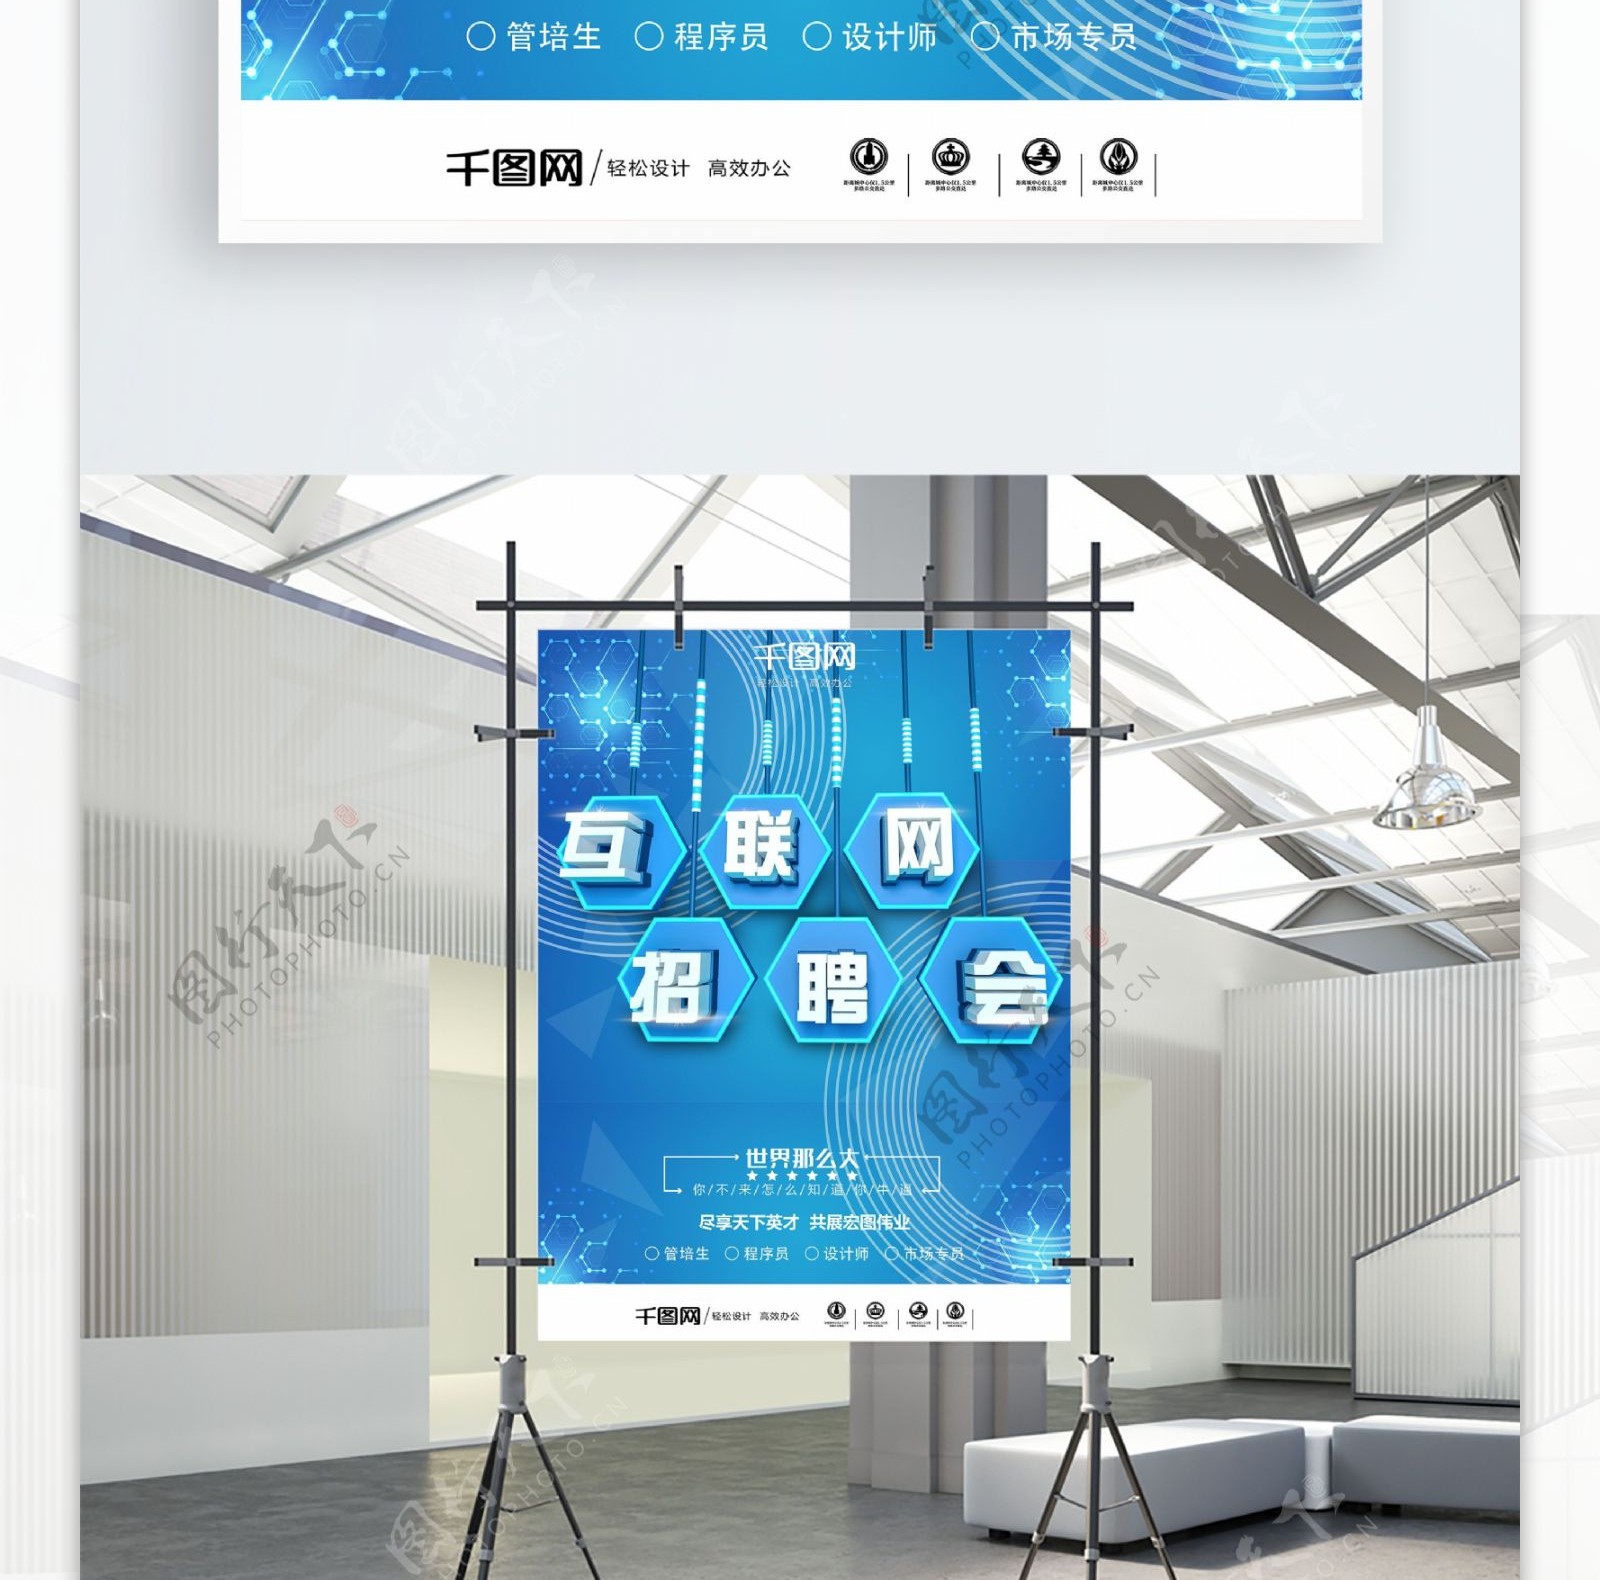 C4D商务简约科技风亮蓝色互联网招聘海报